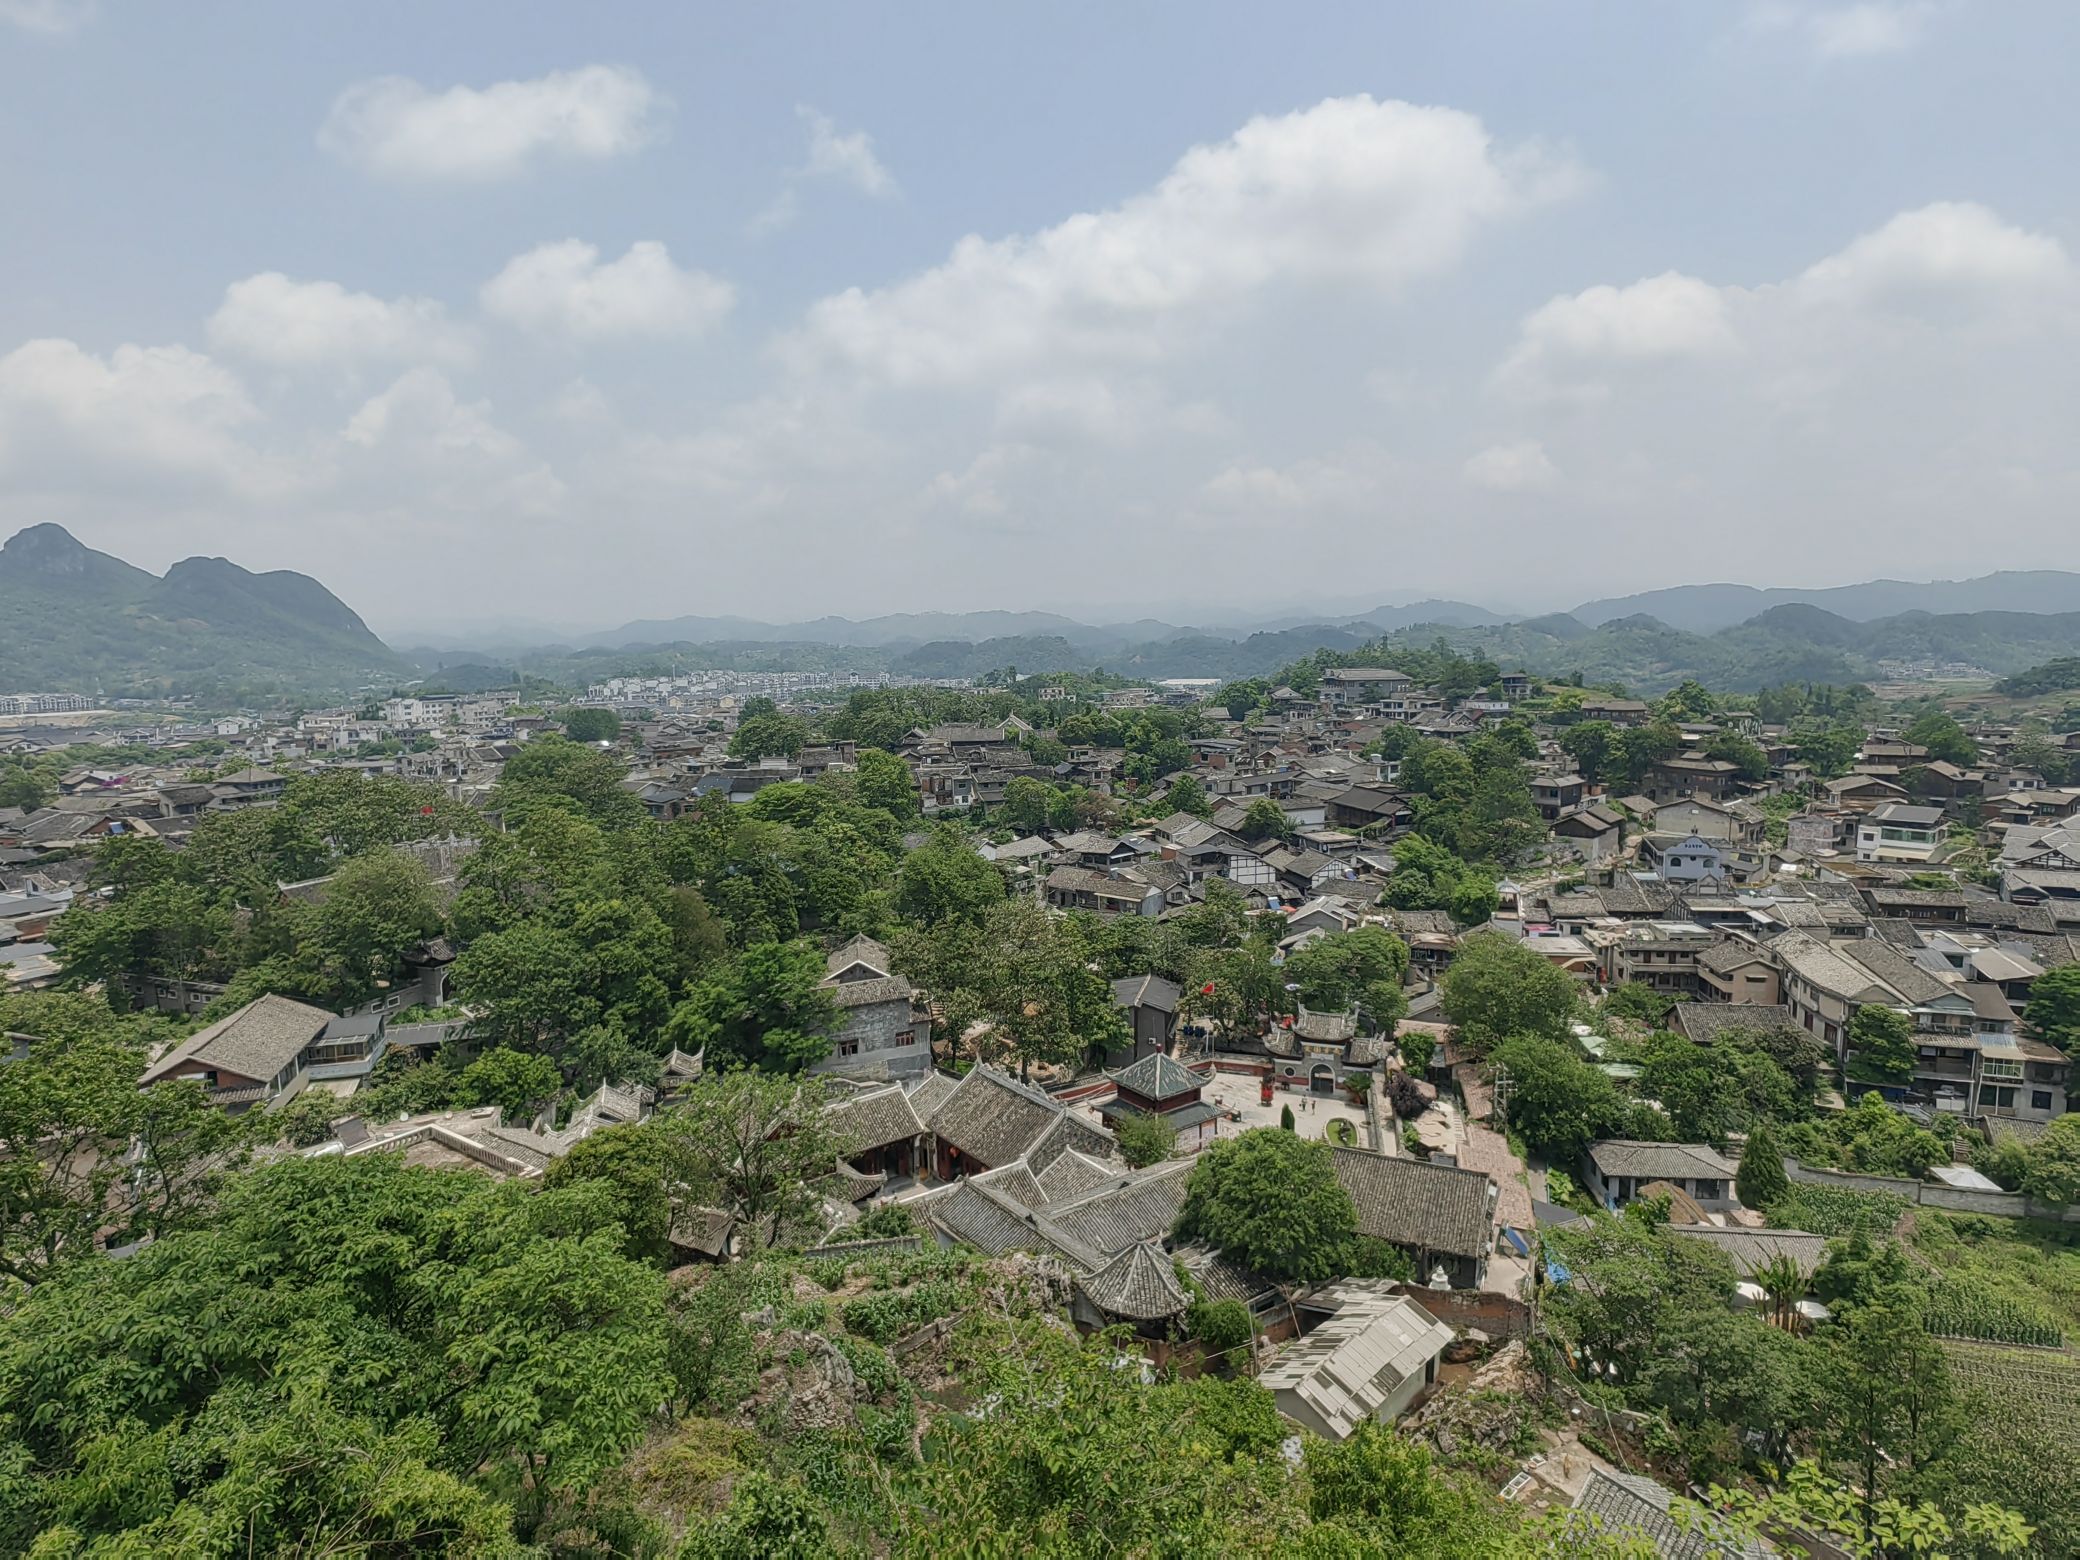 Guizhou Qingyan Ancient Town